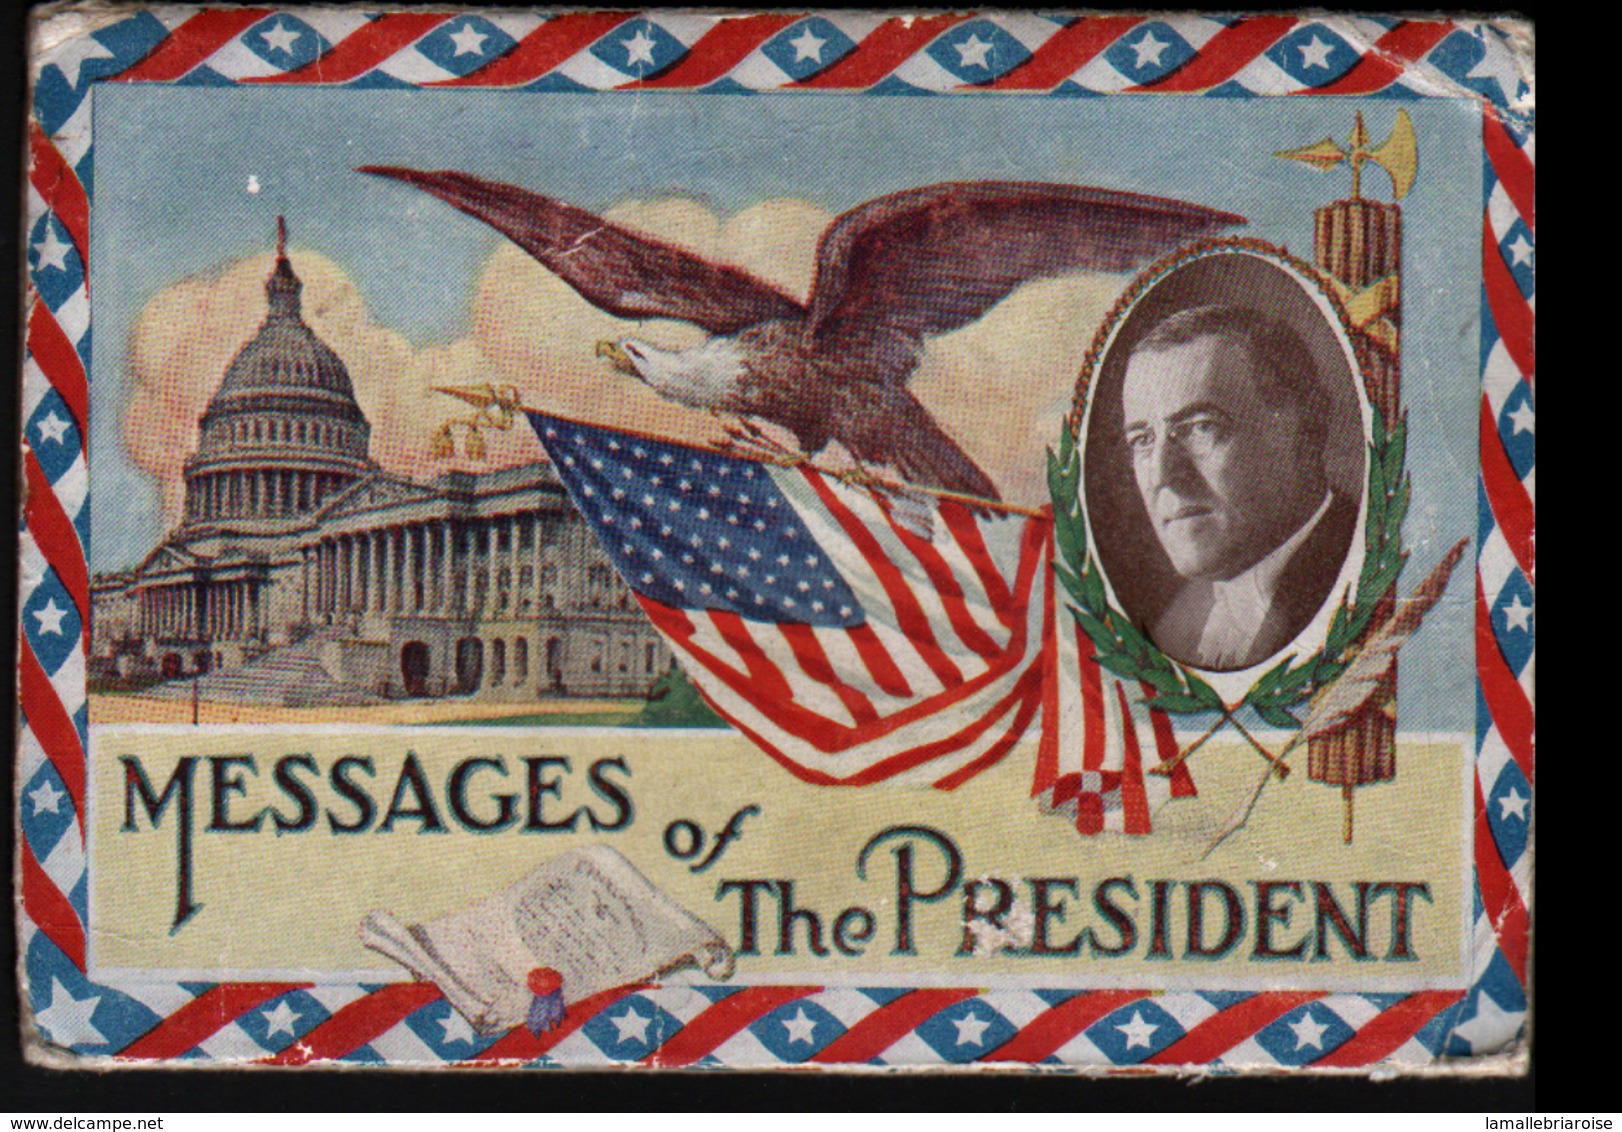 Etats-Unis D'Amerique, Messages Of The President, - Presidentes